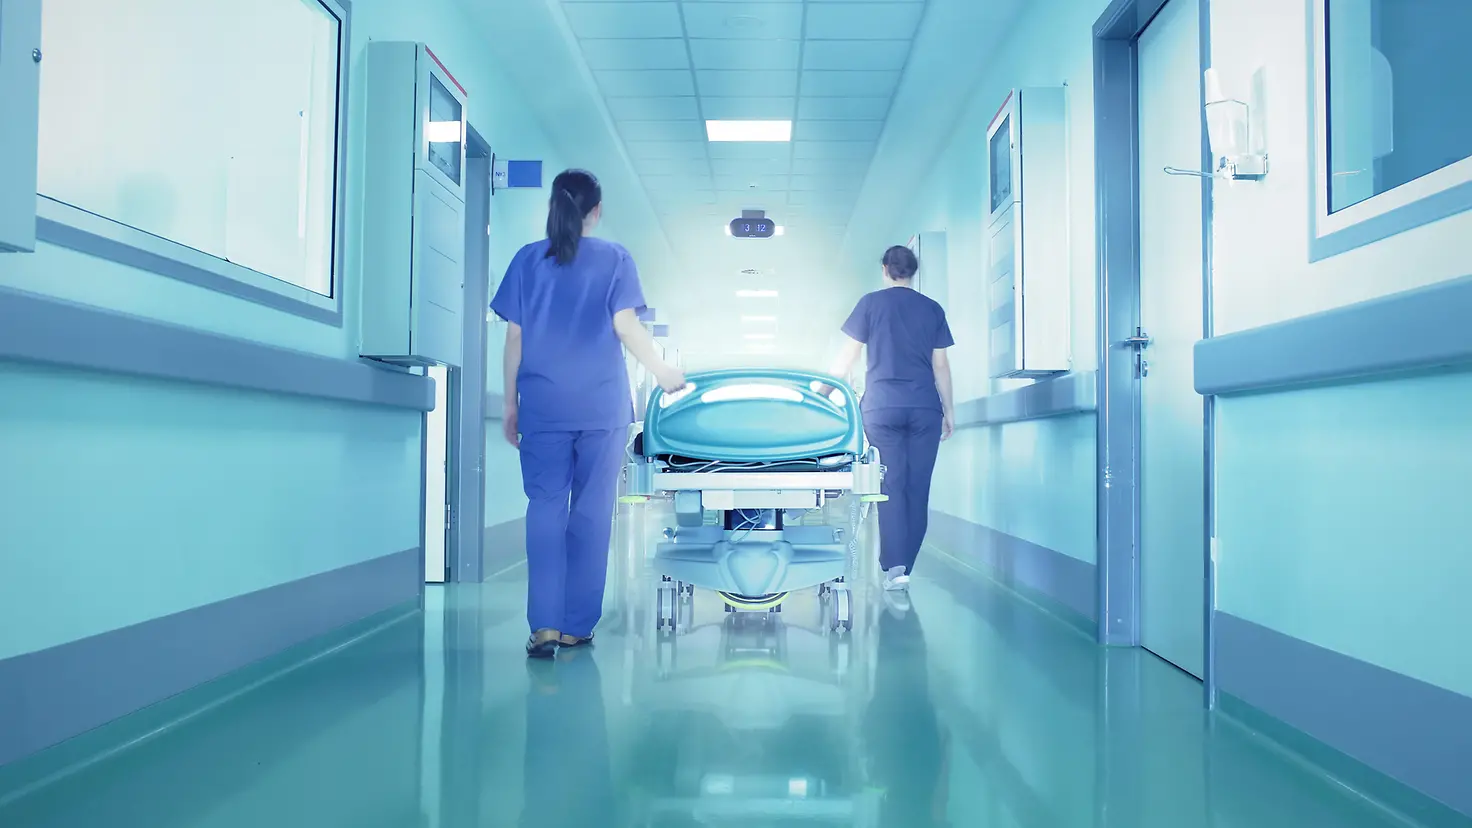 Das Bild zeigt zwei Mitarbeitende eines Krankenhauses.